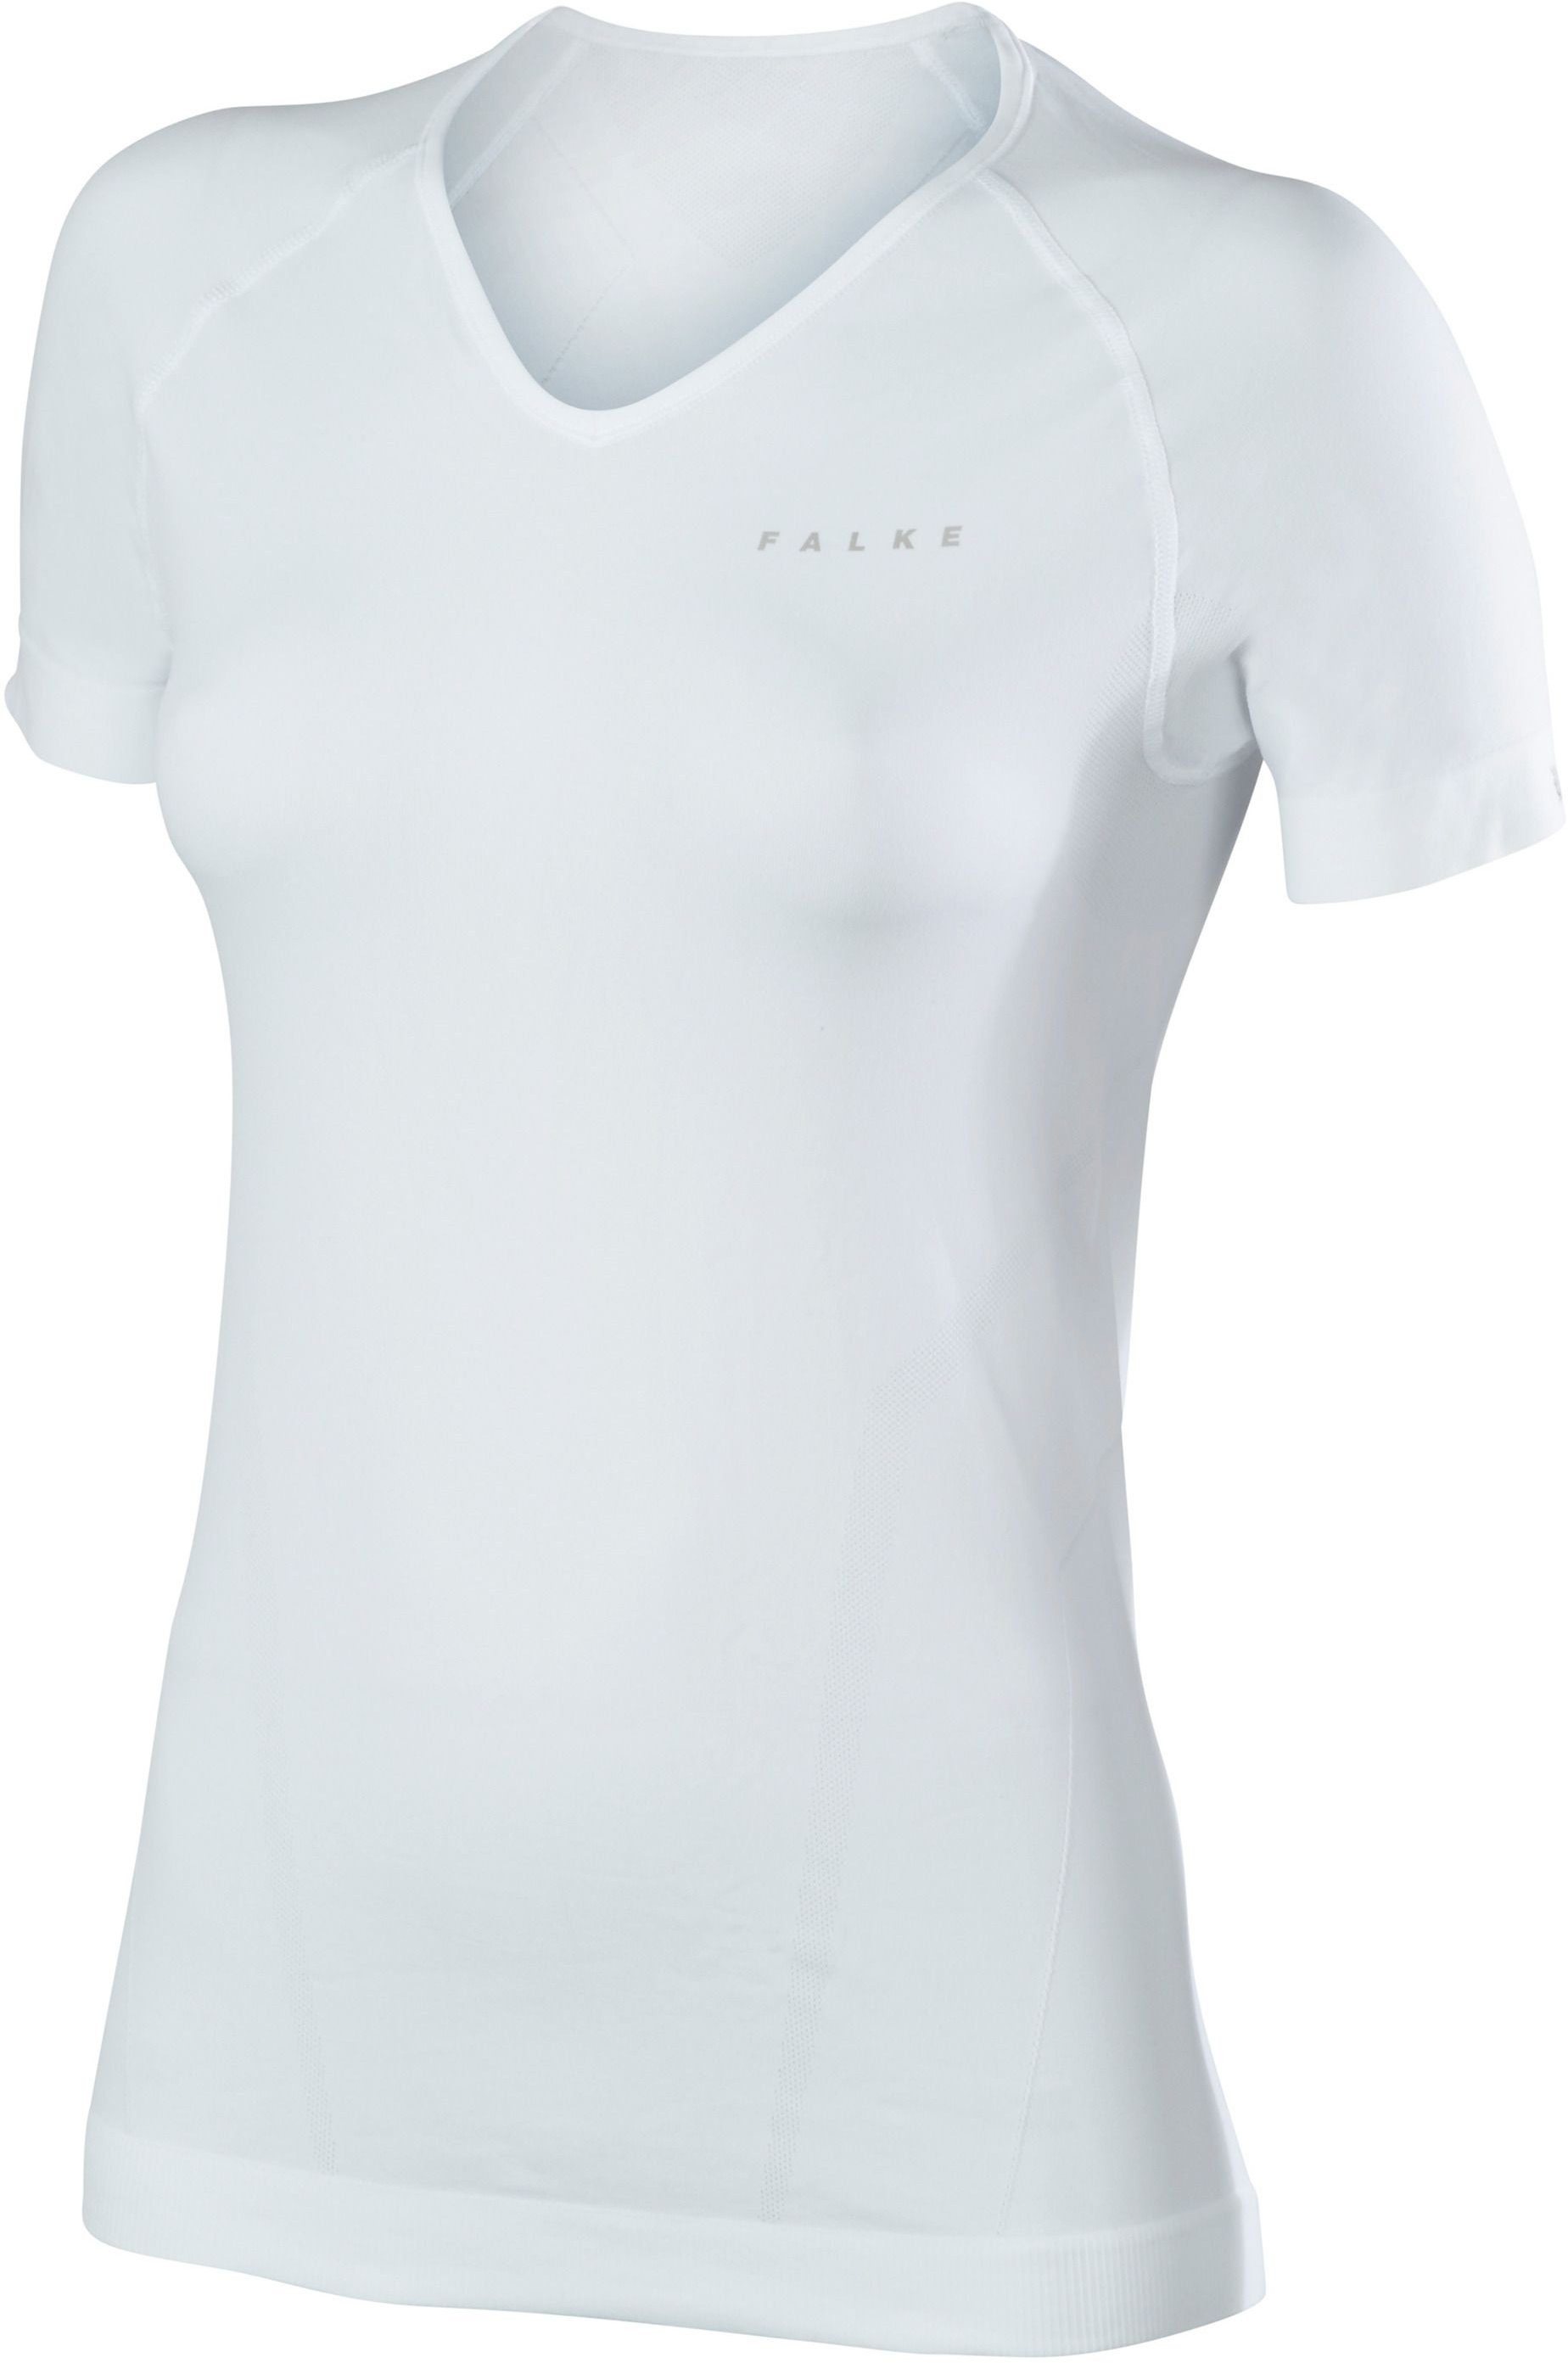 Women Shirt FALKE Funktionsunterhemd white Comfort Shortsleeved